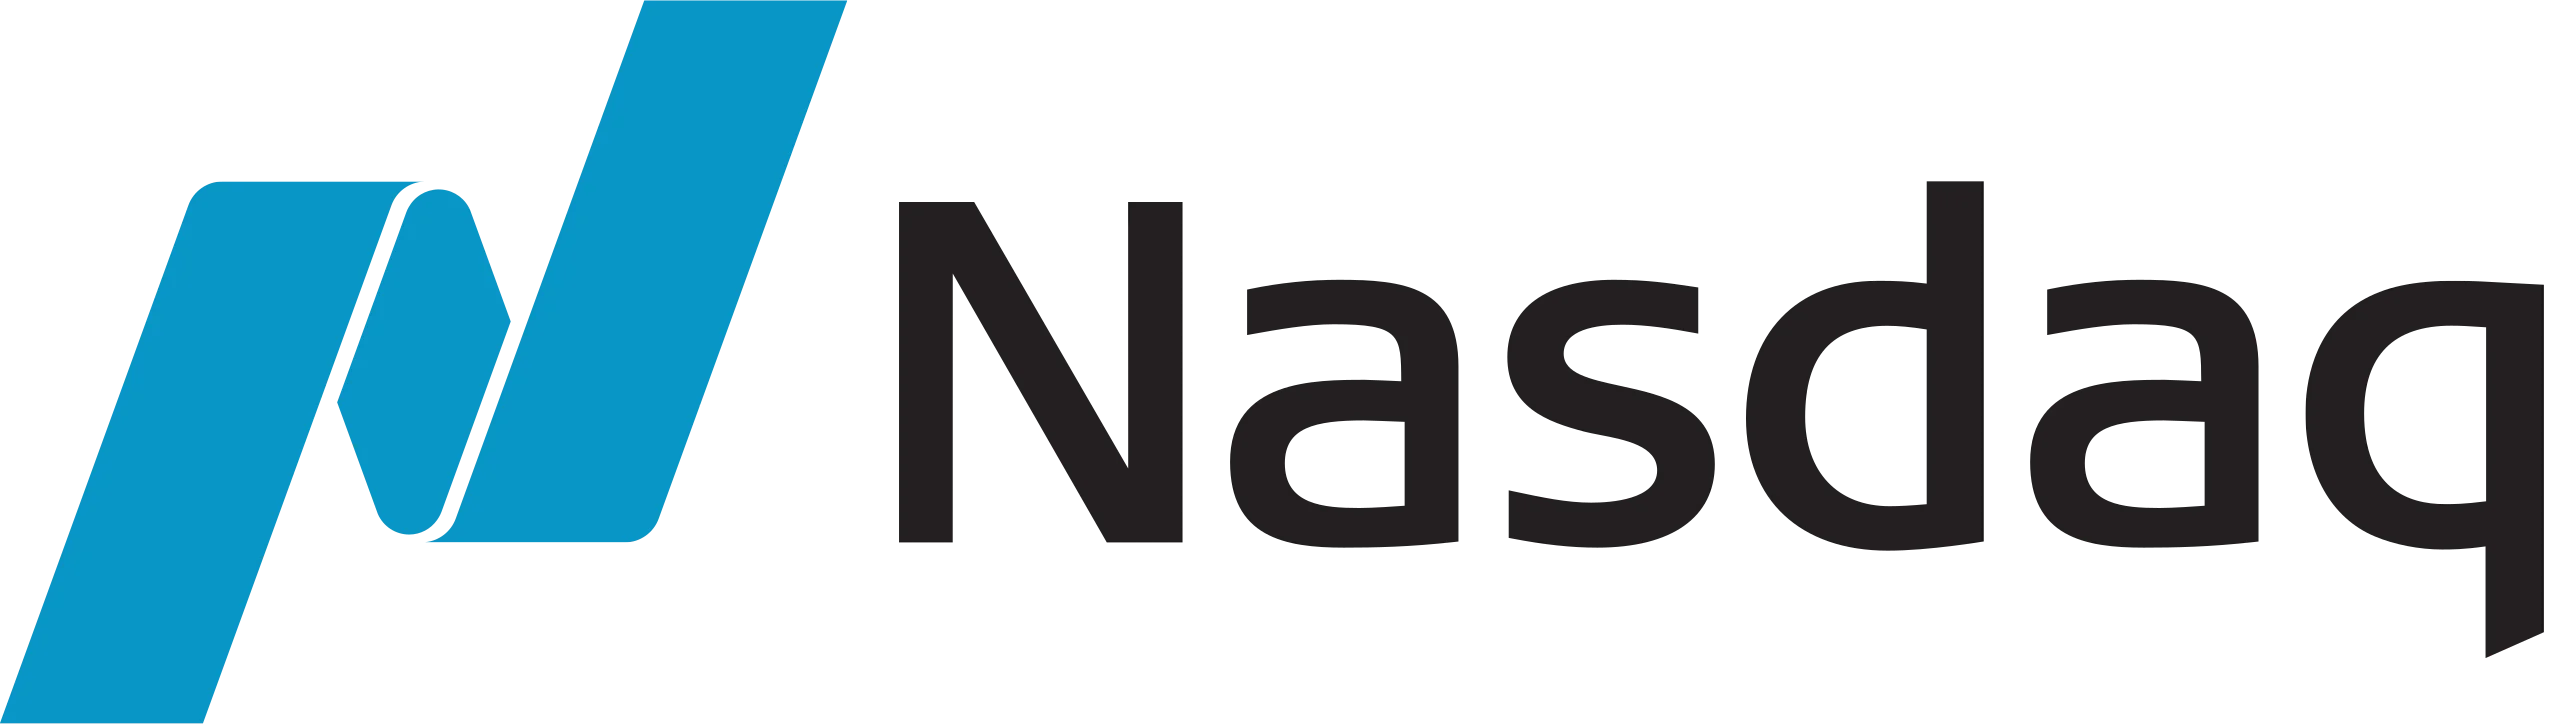 Nasdaq Exchange logo | Brady Market Connectivity